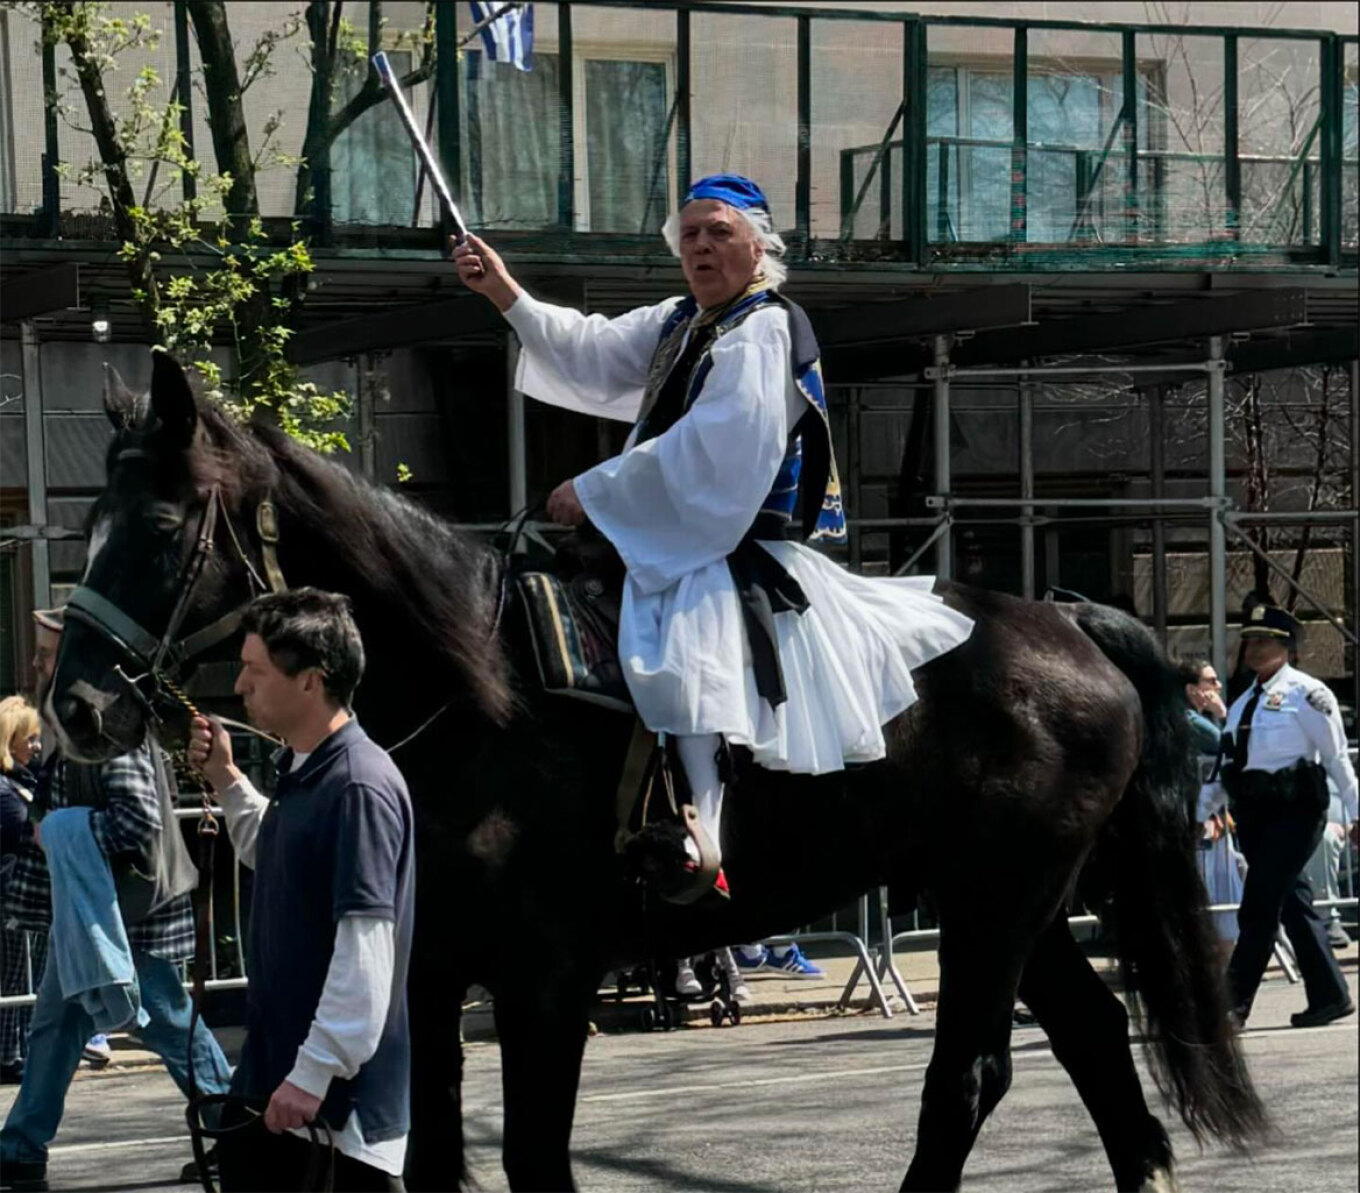 Νέα Υόρκη: Παρέλαση στην 5η λεωφόρο για την 25η Μαρτίου - Το Μανχάταν στα χρώματα της Ελλάδας 